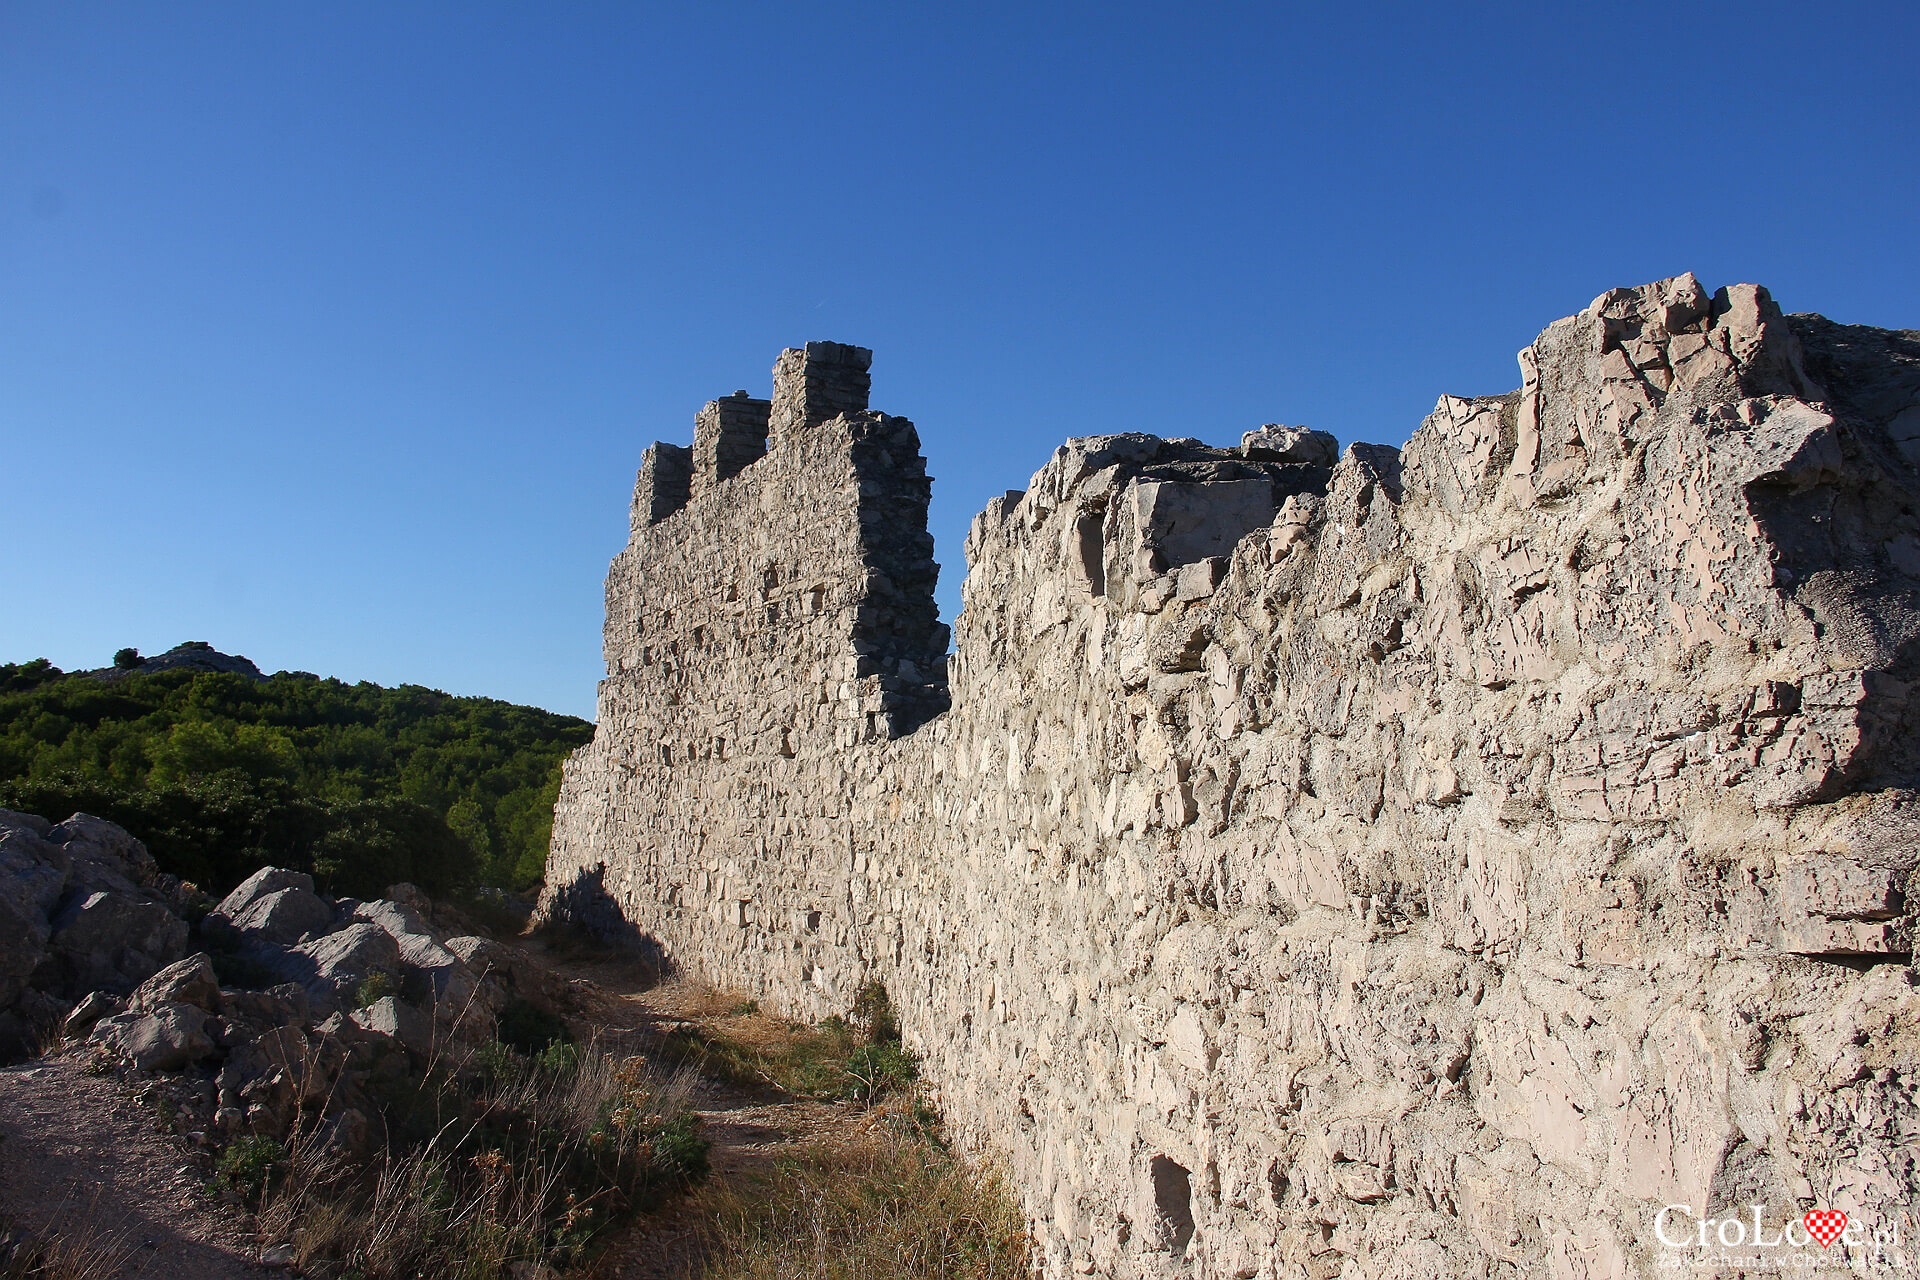 Twierdza Gradina na wyspie Žirje